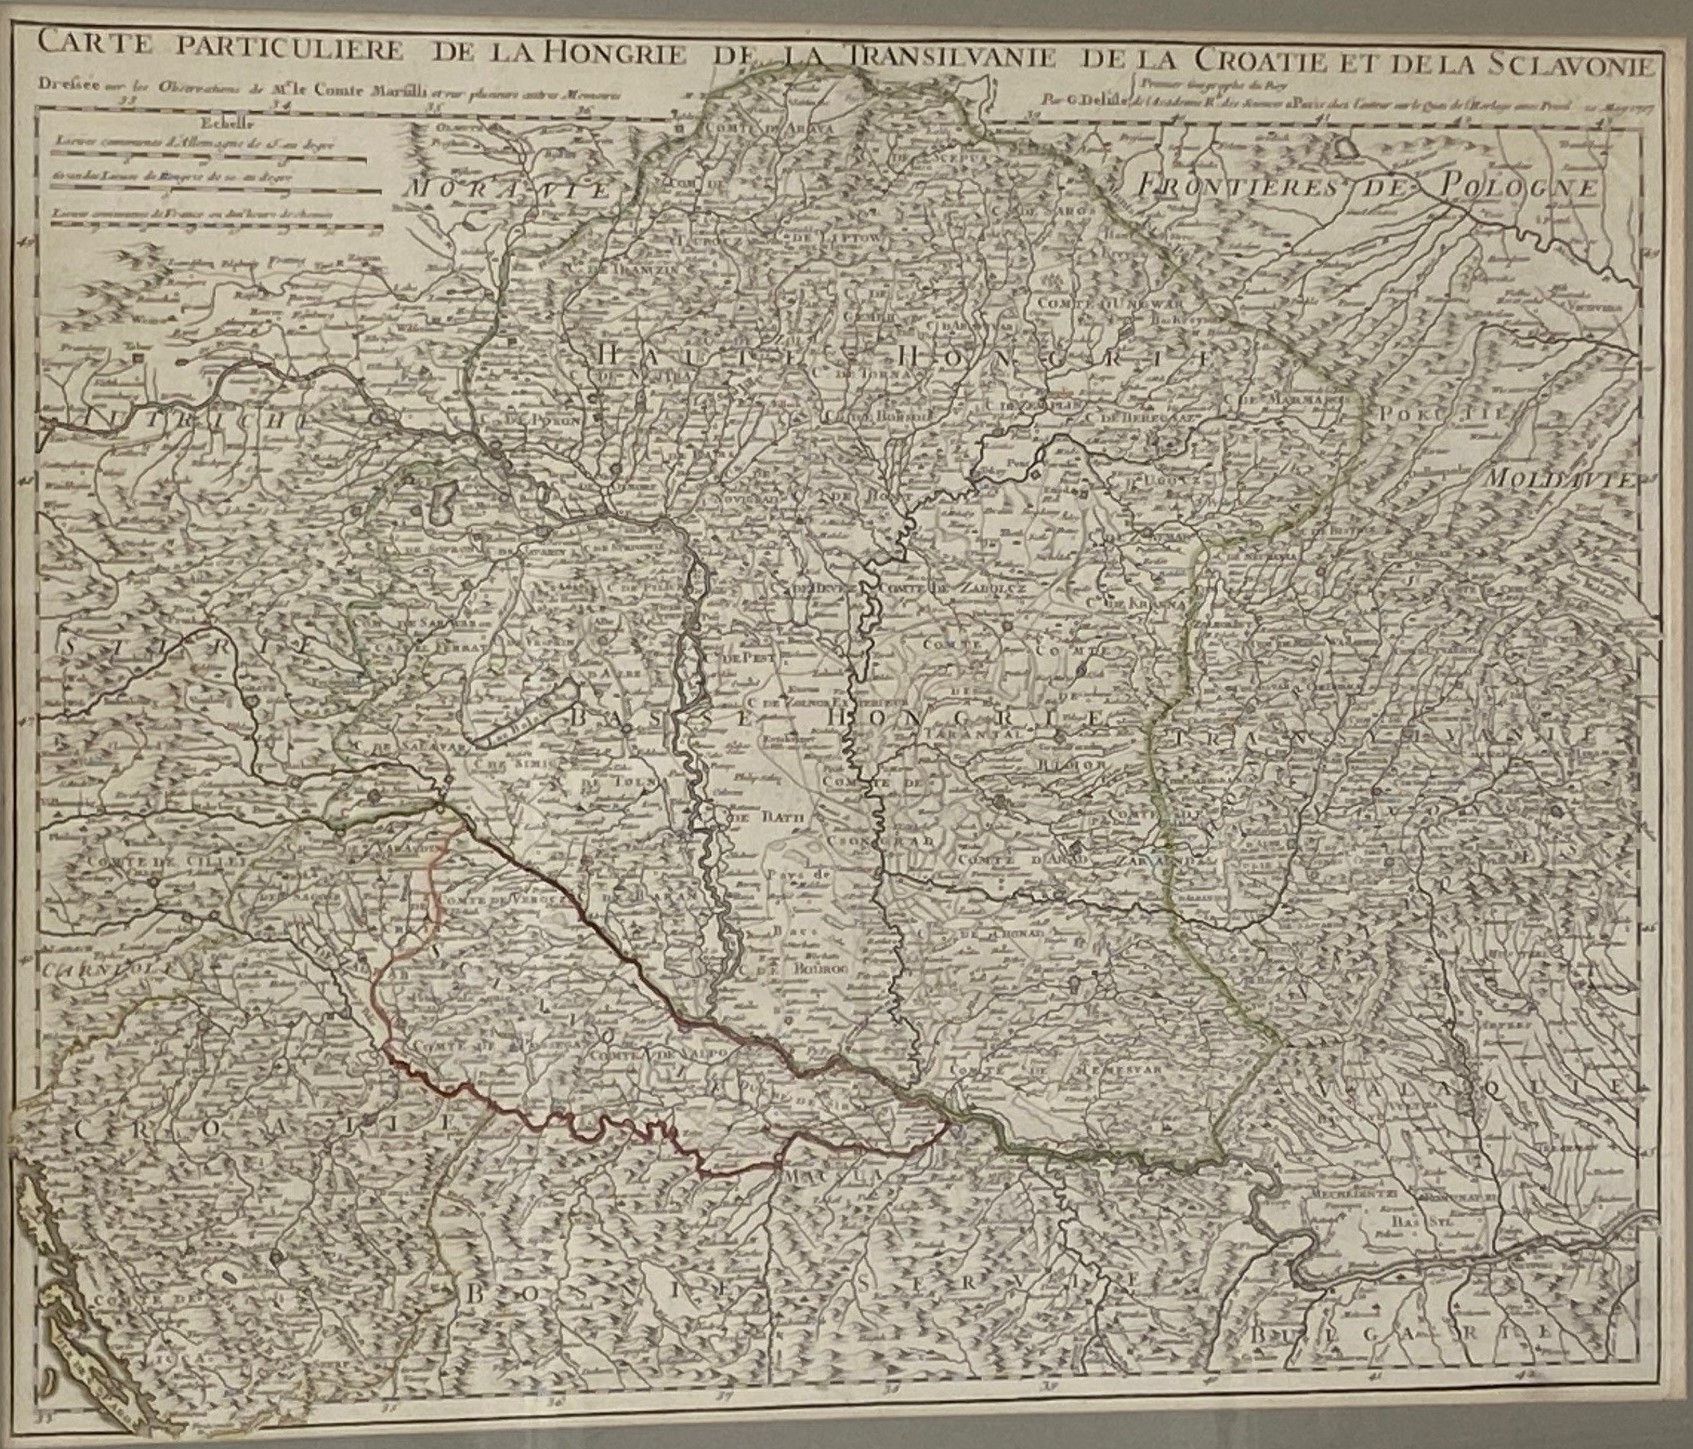 Null Herr Graf MARFILLI - Guillaume DELILLE

Besondere Karte von Ungarn, Transil&hellip;